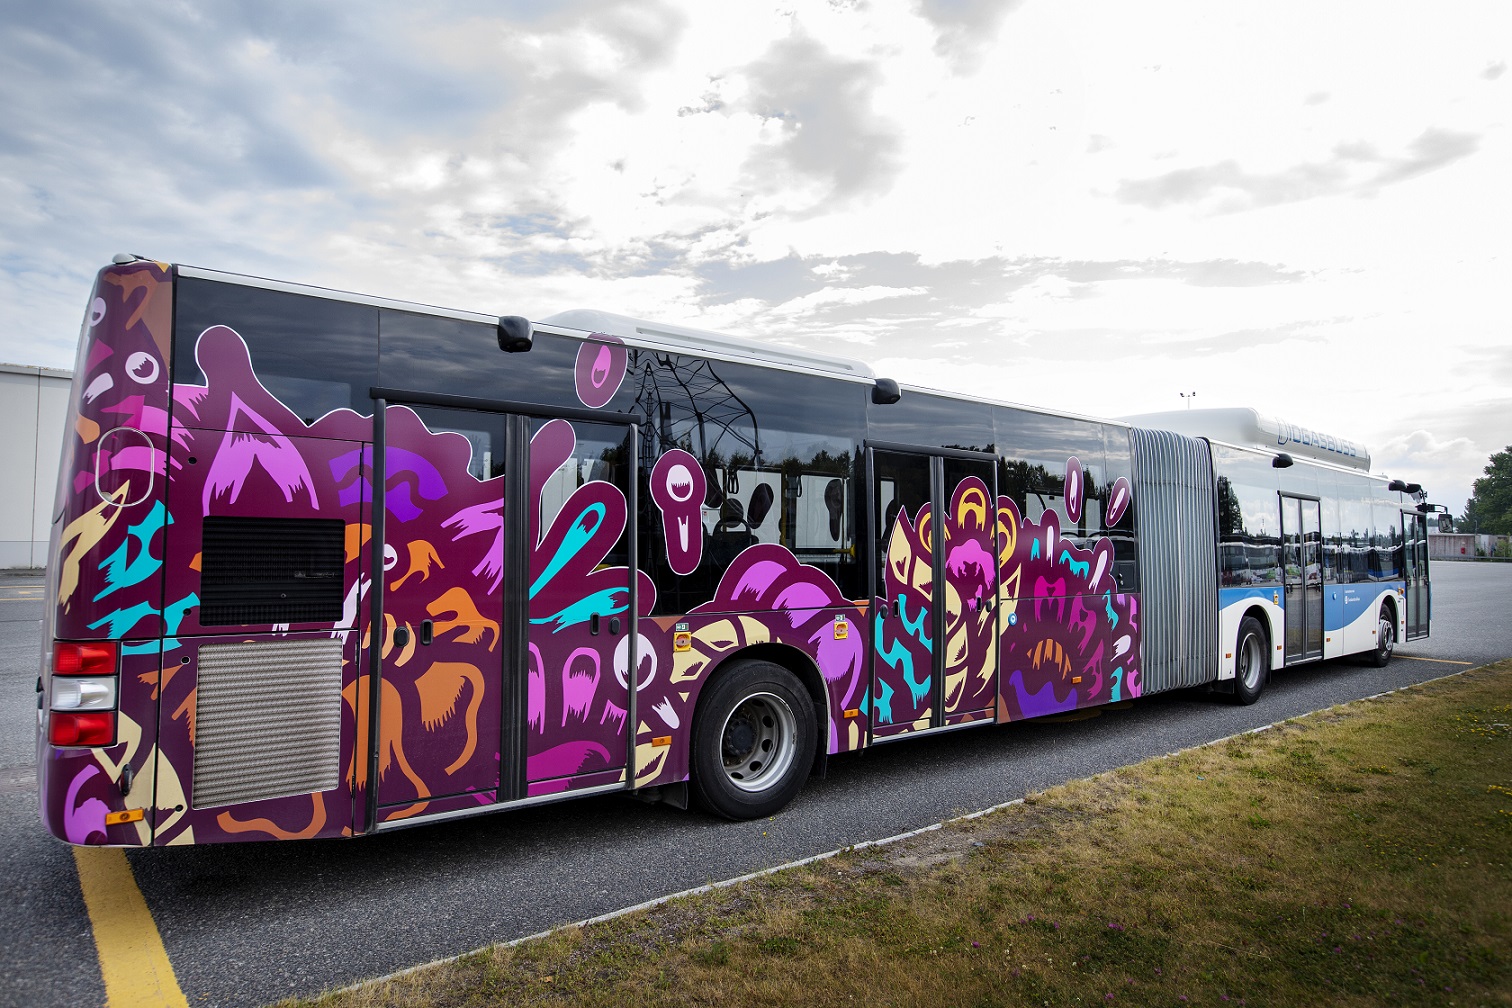 En av stadens stadsbussar, en ledbuss har ena halvan utsmyckad med ett tryck av ett blom mönster. Mönstret går i olika former och är främst i färgen lila men även konturer i färgerna gul, orange, blå samt rosa.